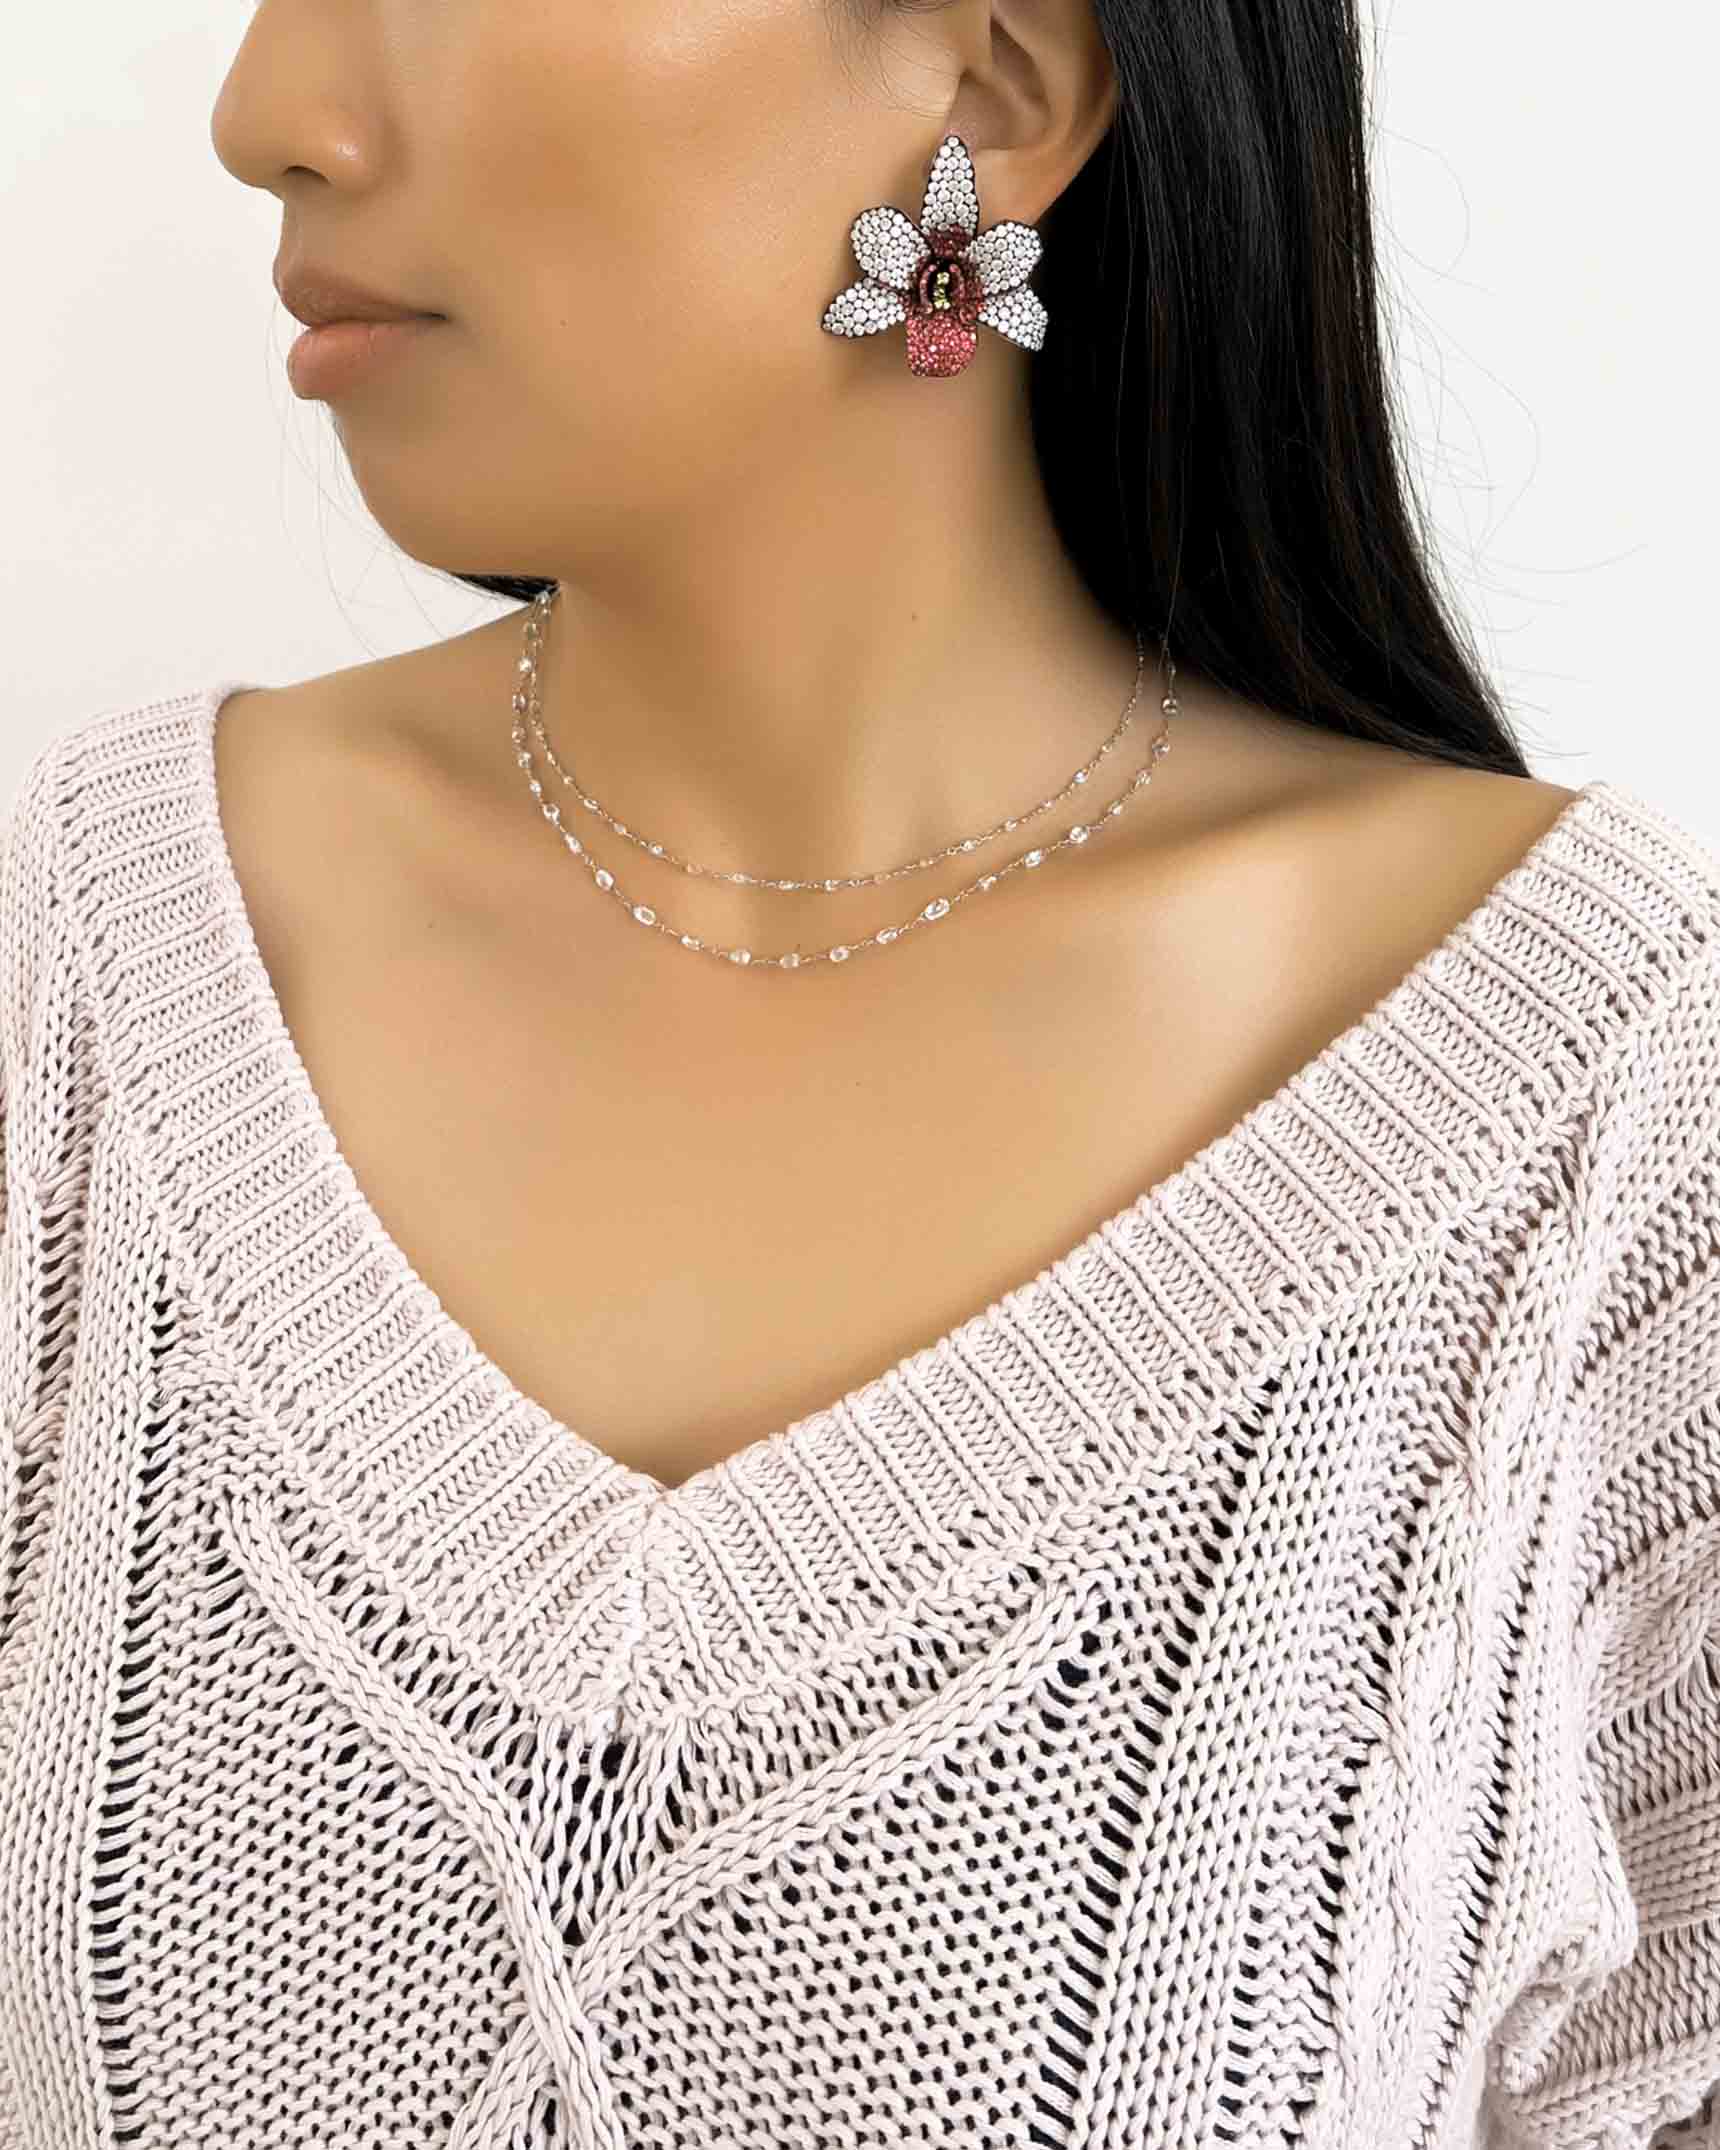 Spinel and Diamond Earrings and Necklaces ECDKK01884 – NDOTK05078 – NDUTK02696